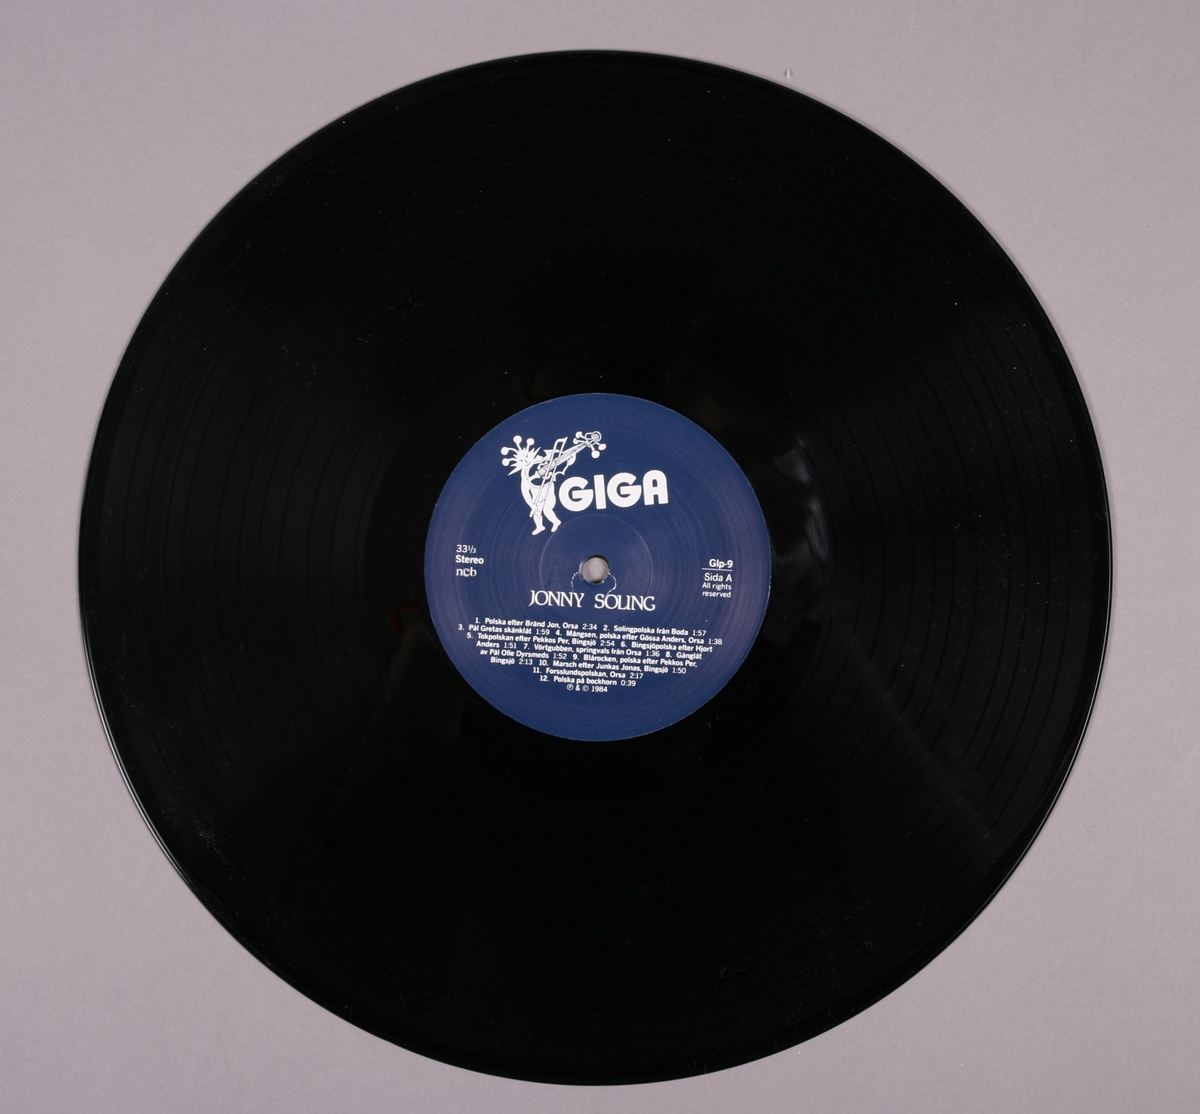 Grammofonplate i svart vinyl og plateomslag i papp. Plata ligger i en papirlomme som er signert med hilsen fra Jonny Soling (se bilde).